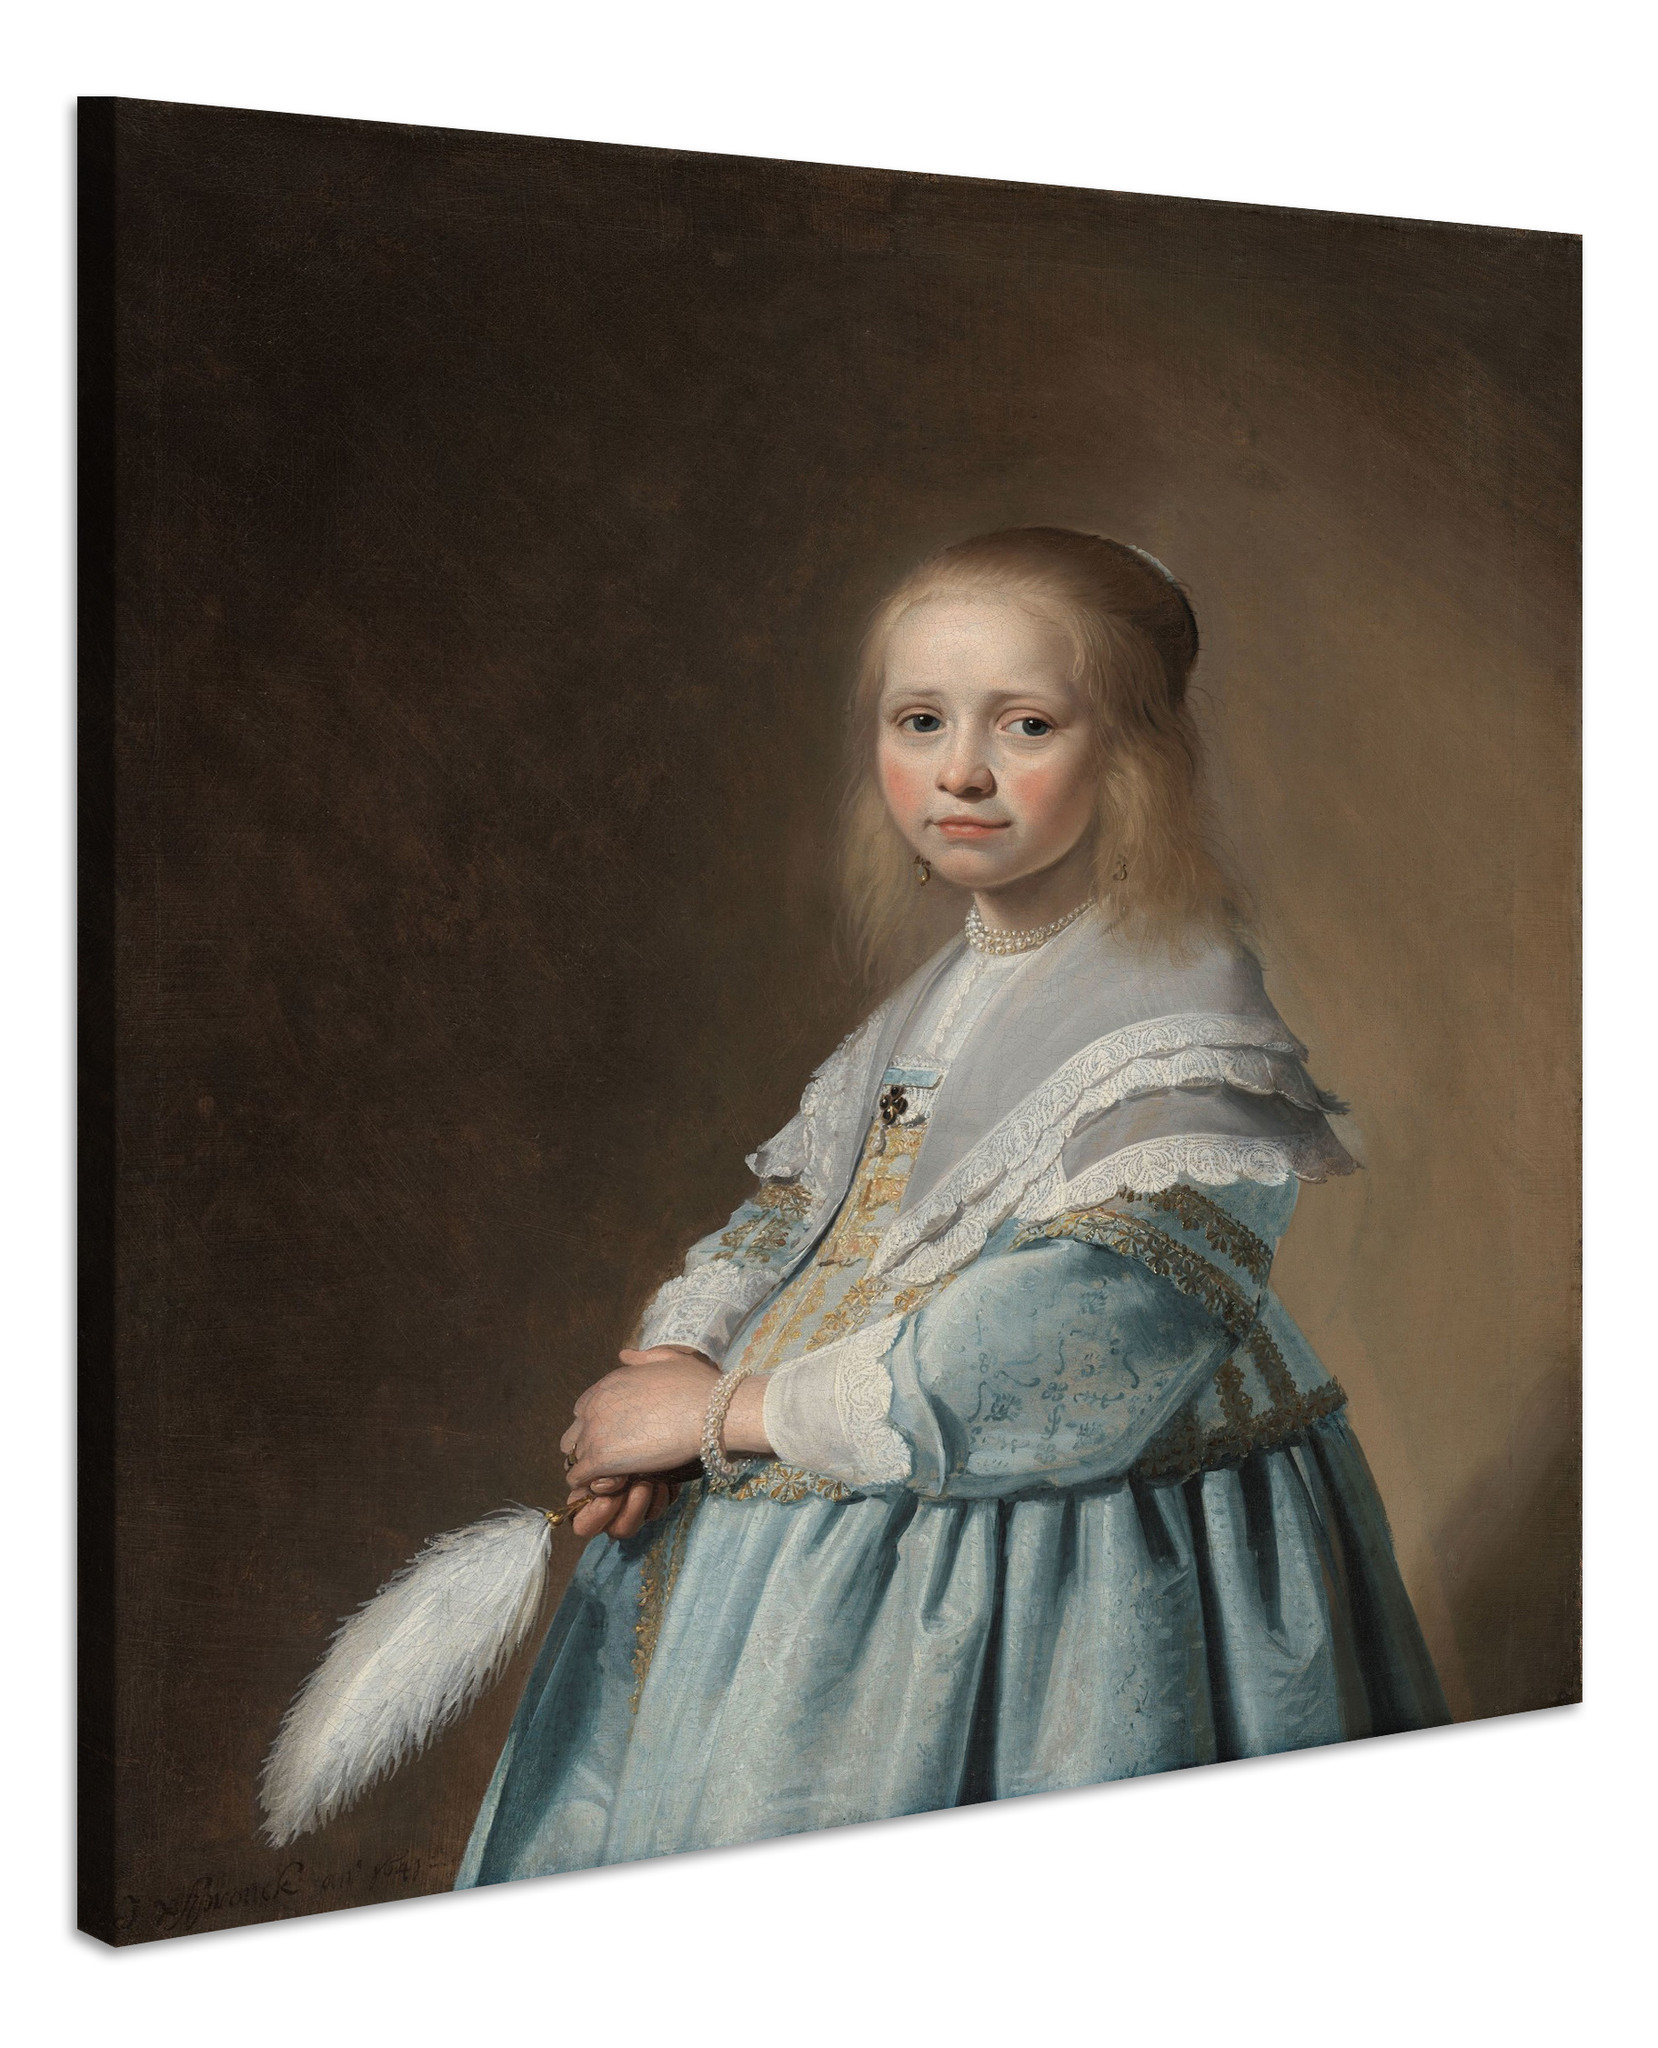 Schilderij - Johannes Cornelisz. Verspronck, Portret van een meisje in het blauw, 1641, 80x100cm